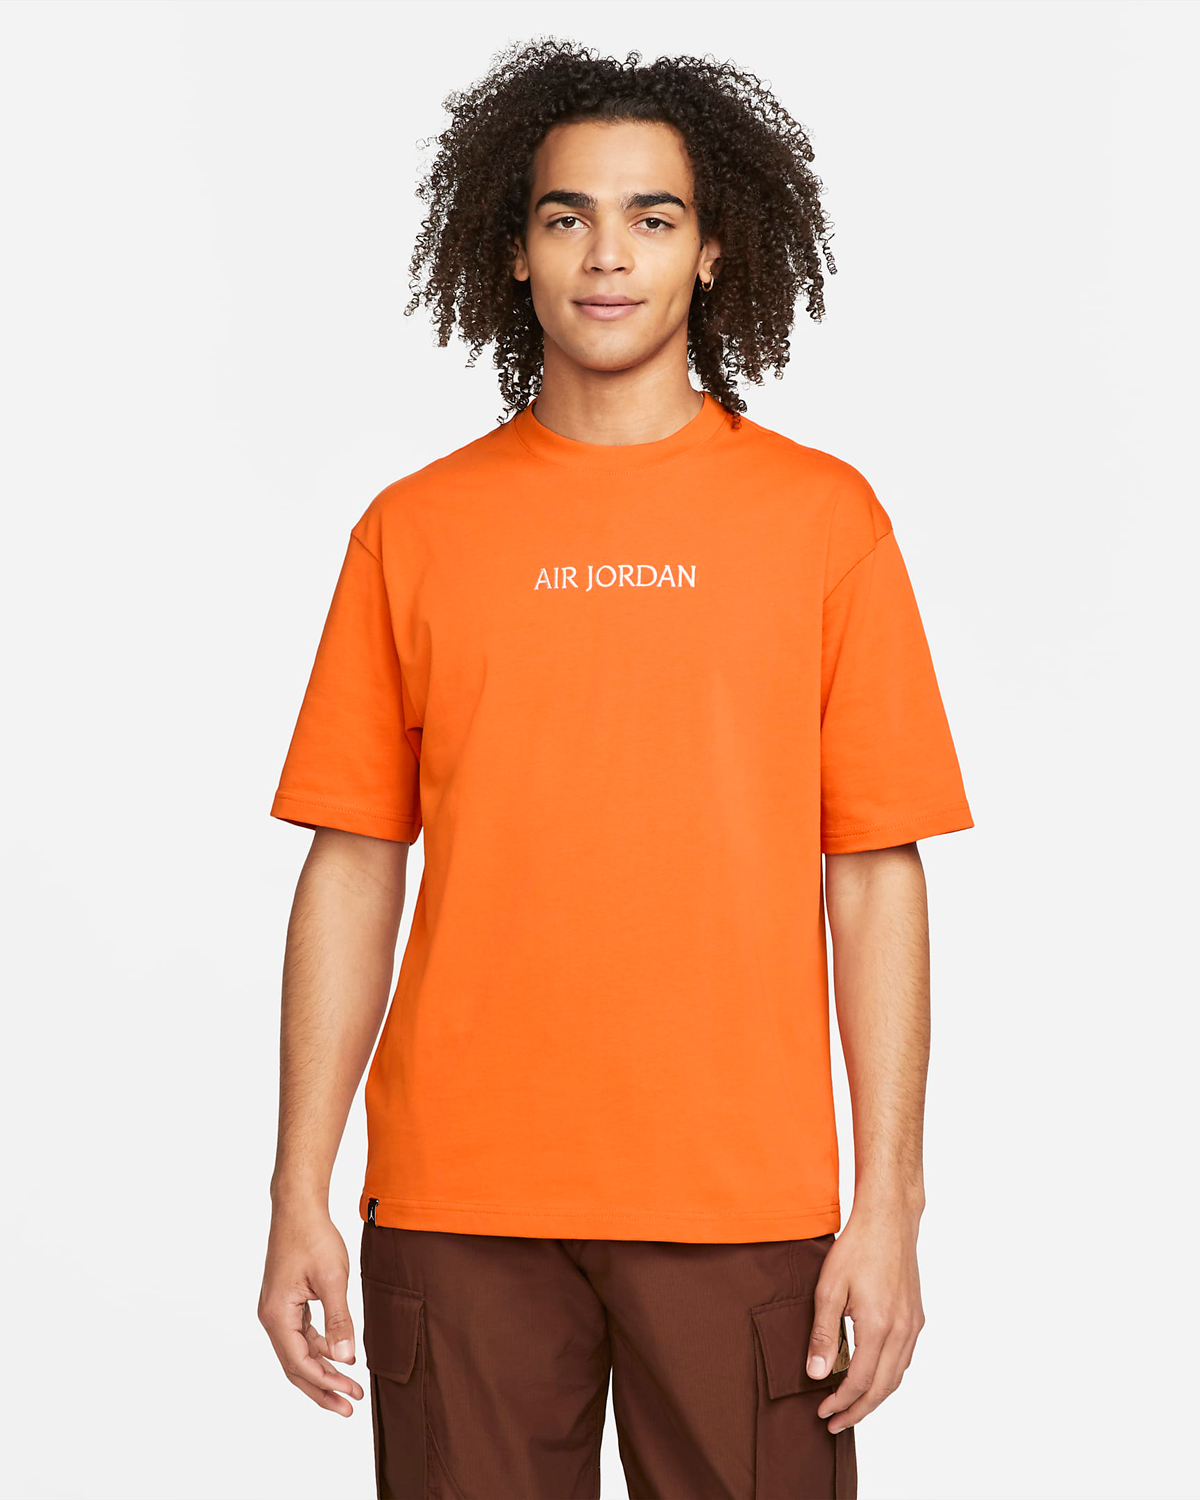 air-jordan-starfish-orange-shirt-1